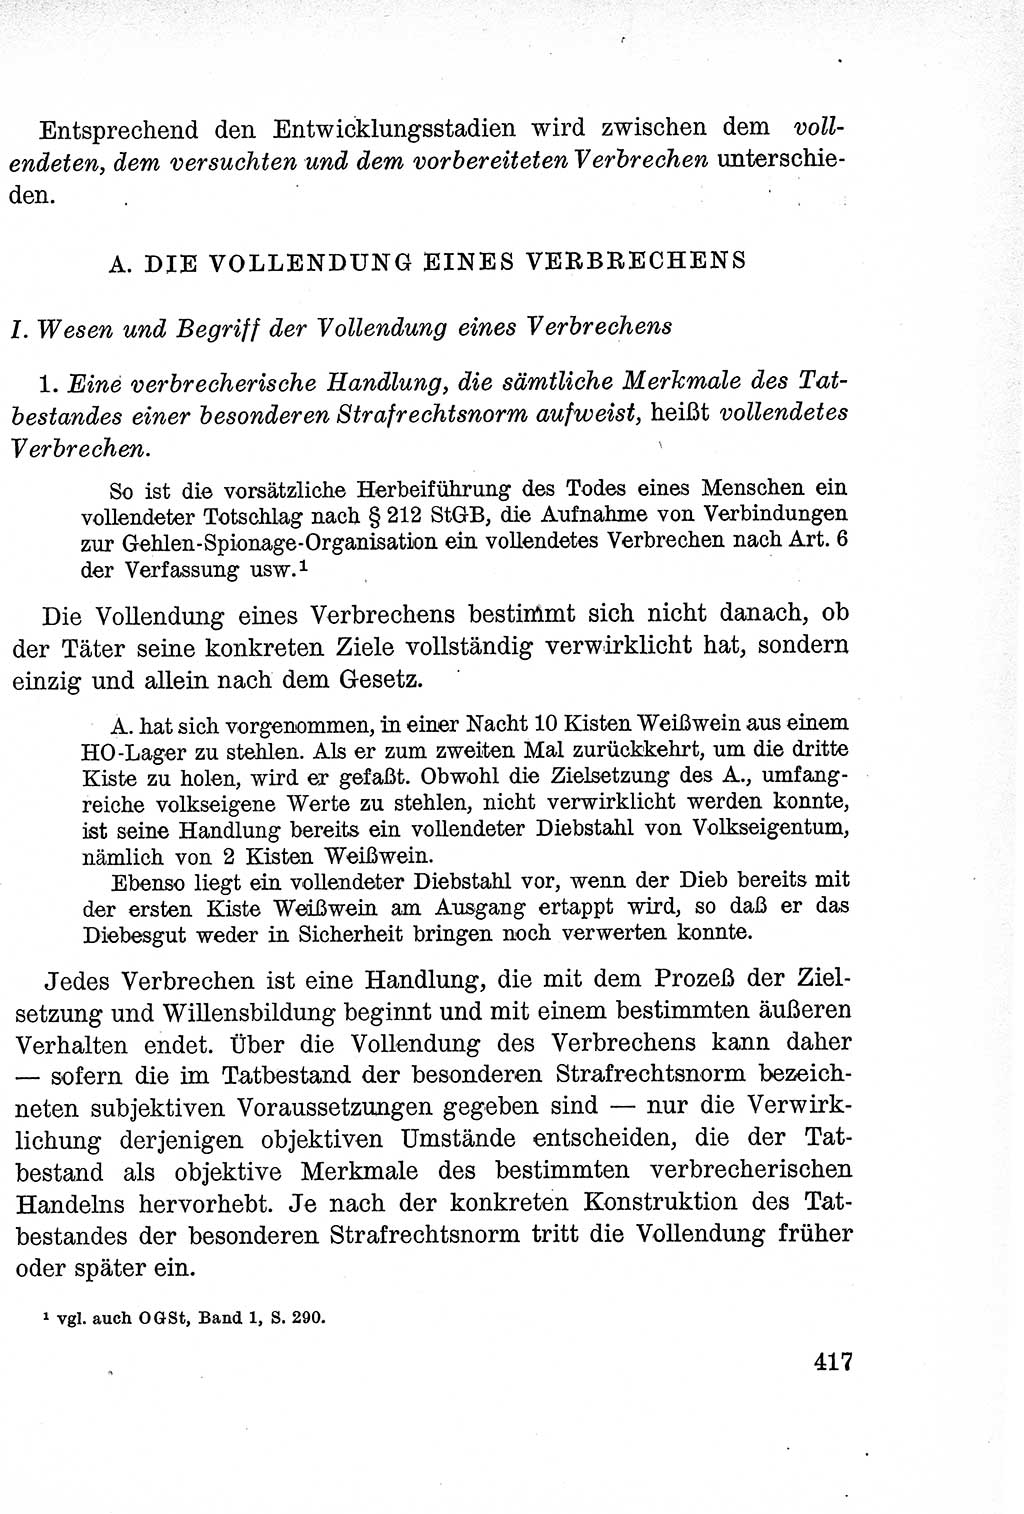 Lehrbuch des Strafrechts der Deutschen Demokratischen Republik (DDR), Allgemeiner Teil 1957, Seite 417 (Lb. Strafr. DDR AT 1957, S. 417)